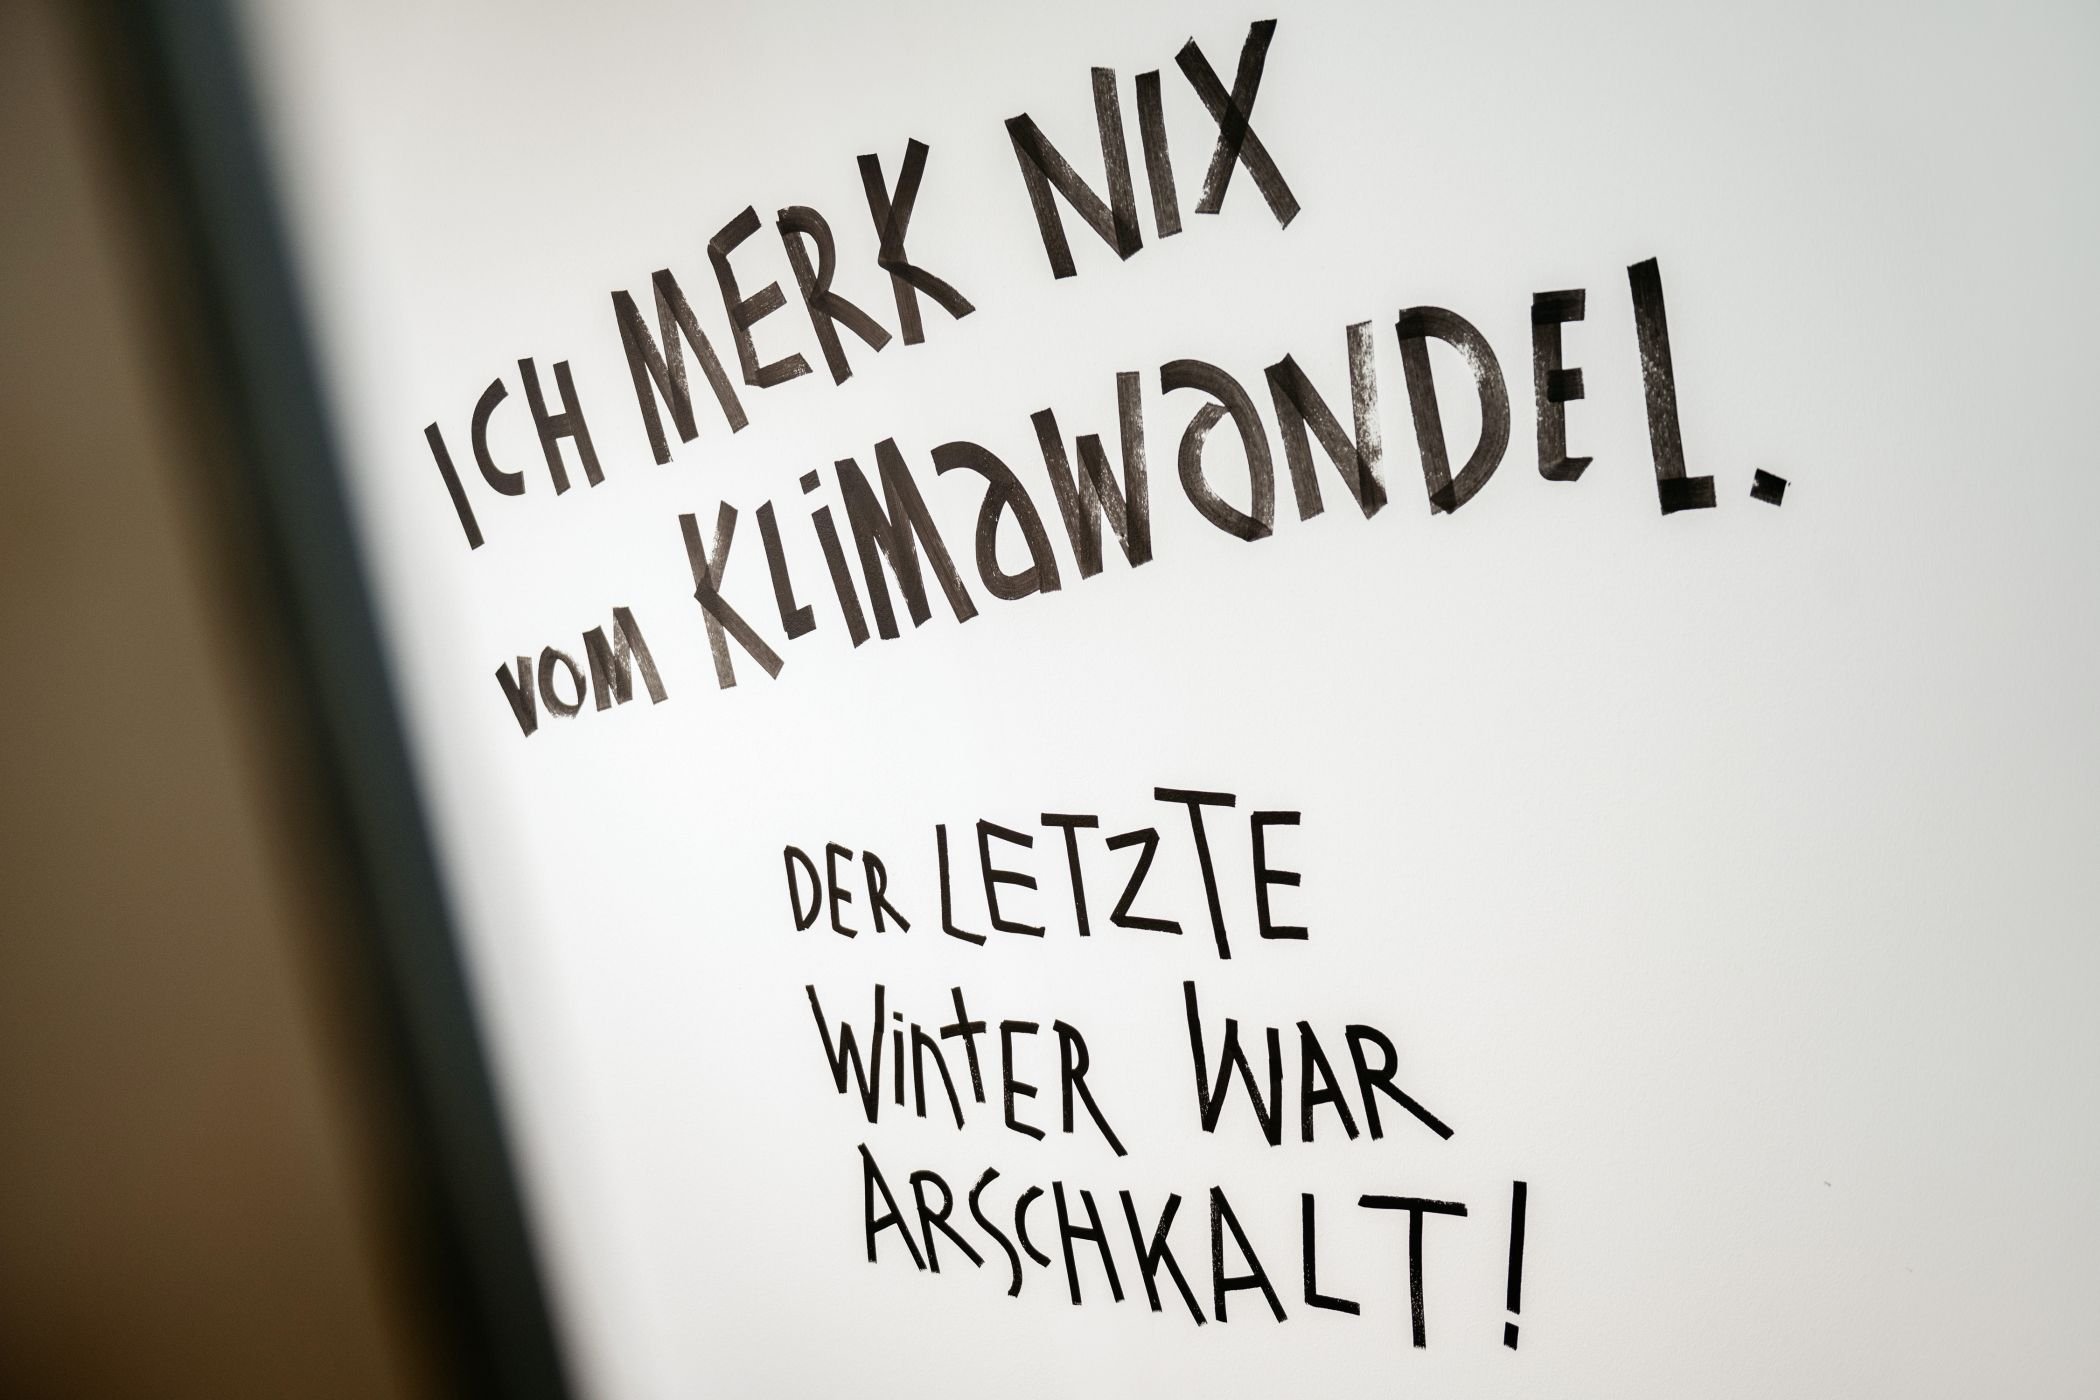 Provokante Sätze an den Ausstellungswänden sollen die Museumsgäste zum Nachdenken anregen / LWL/Steinweg